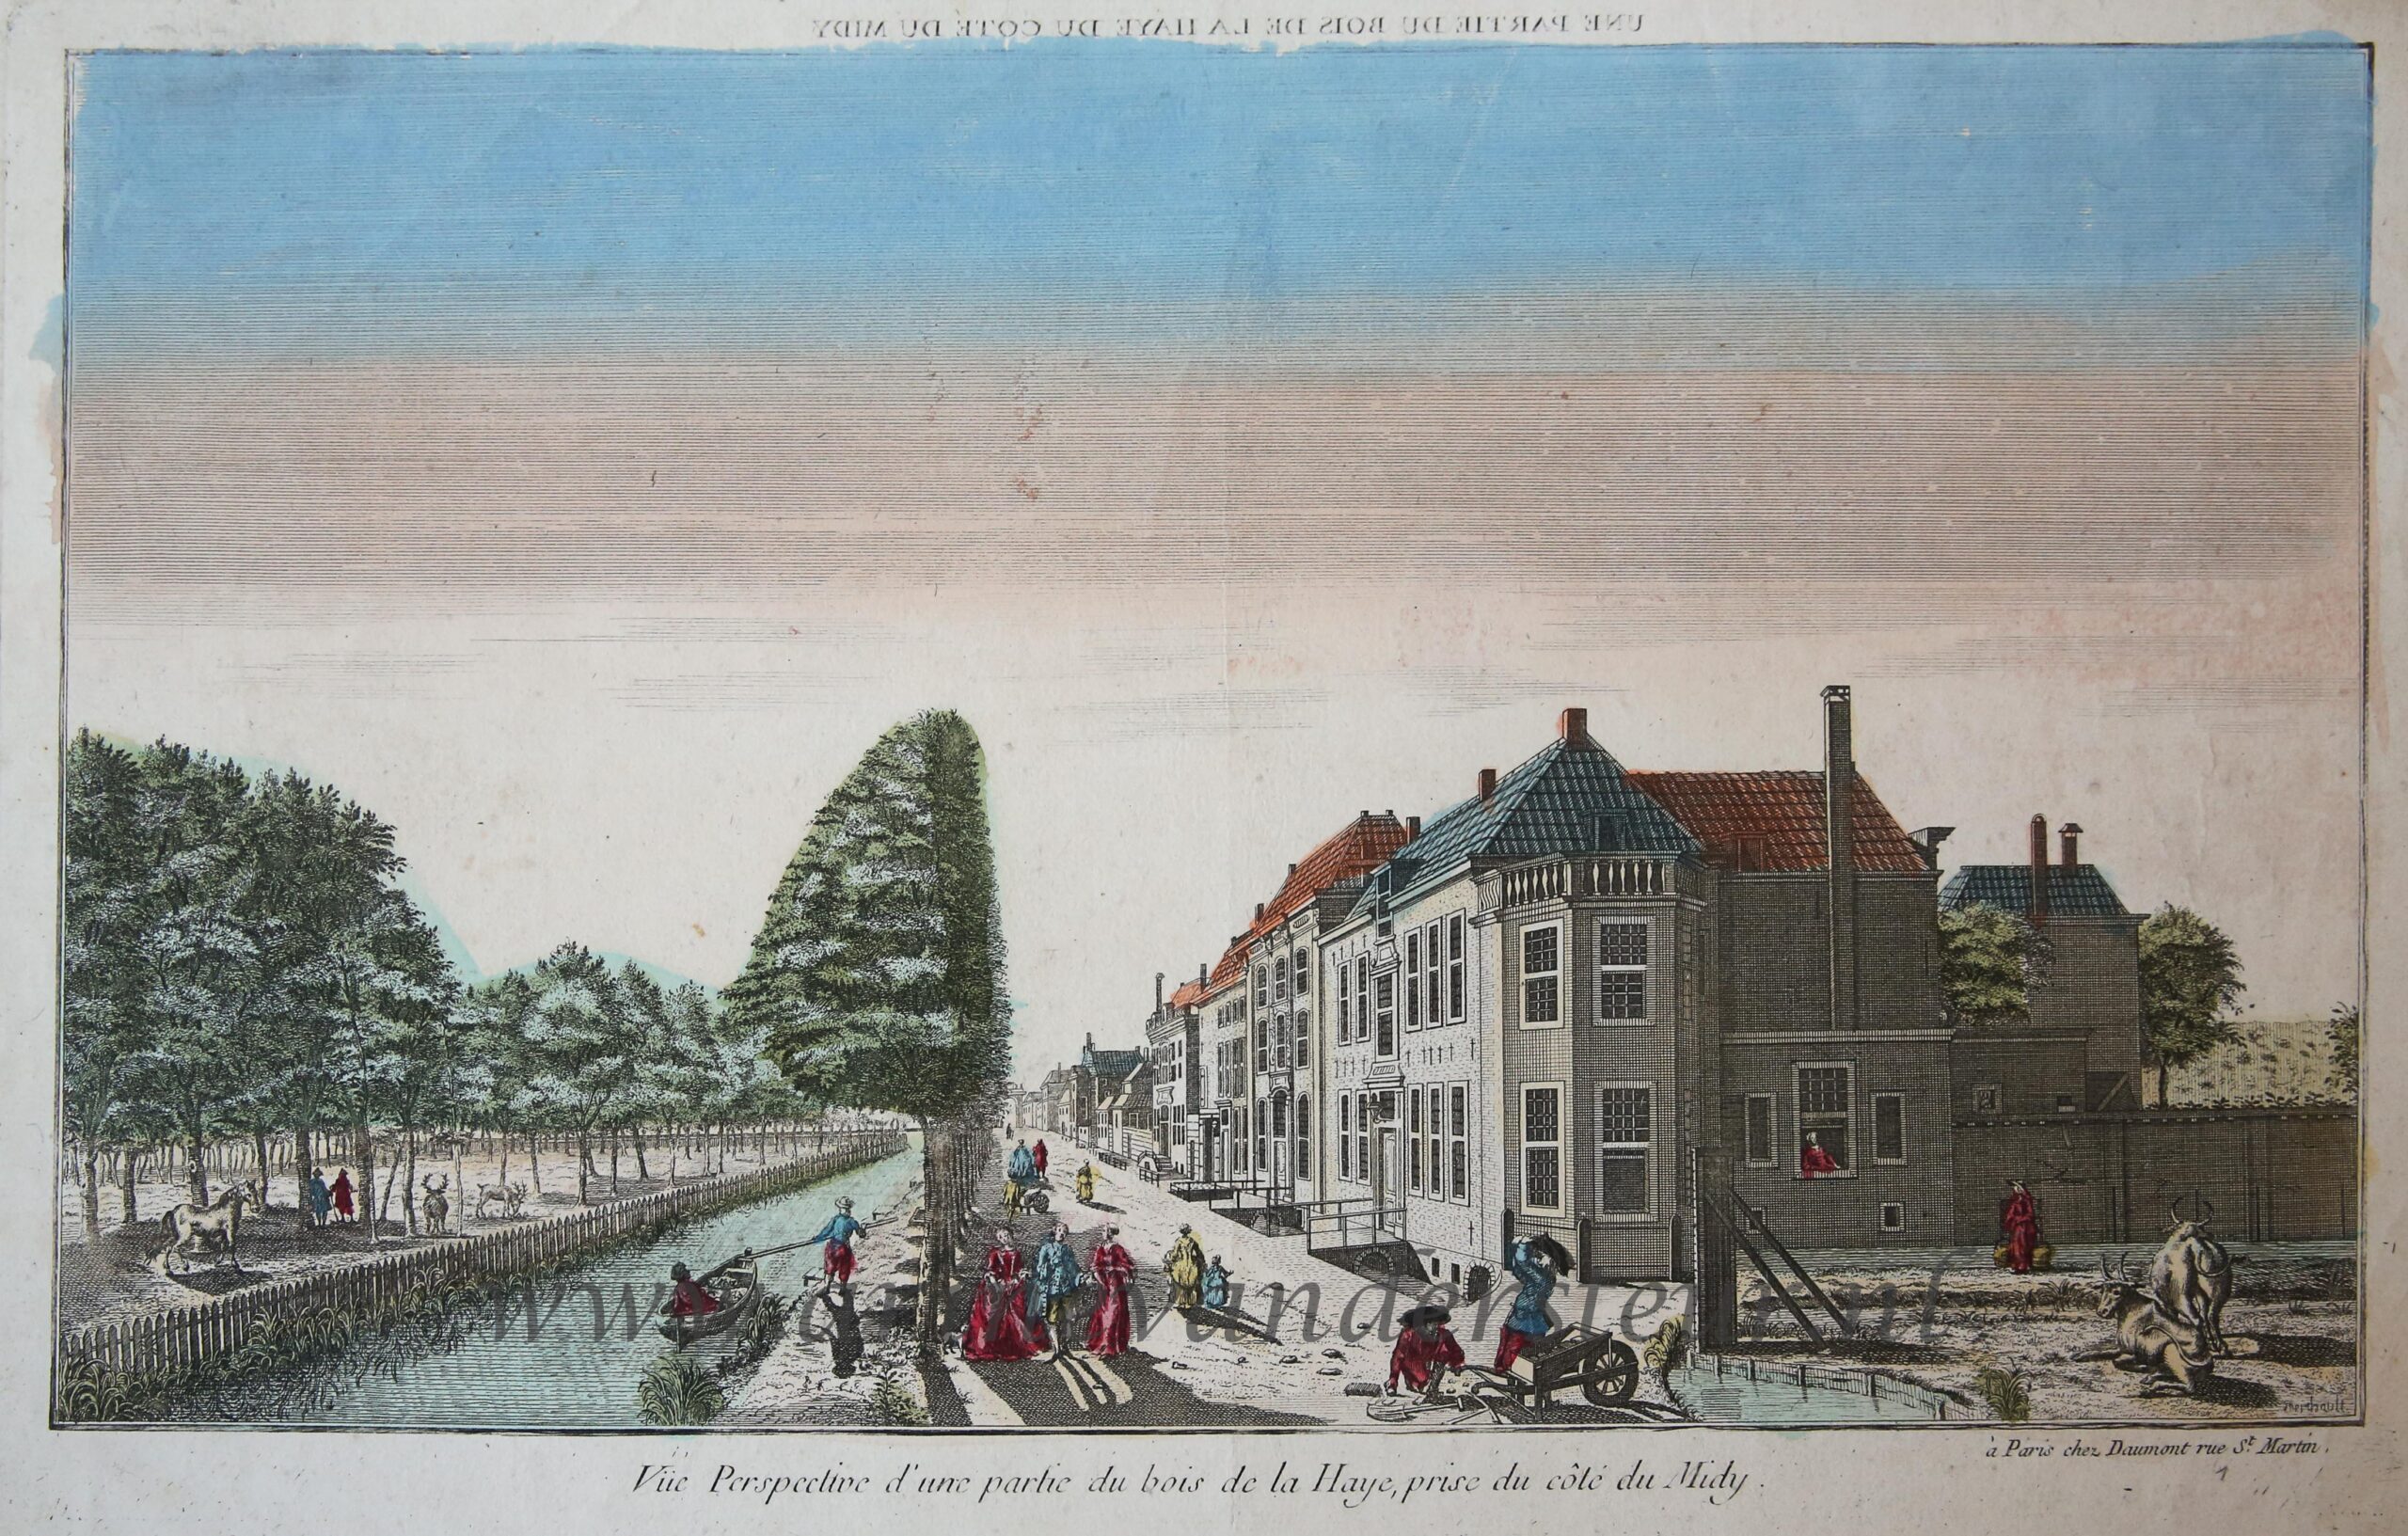  - [Handcolored Opticaprent/Optical view The Hague/Den Haag] UNE PARTIE DU BOIS DE LA HAYE DU COTE DU MIDY (Haagse Bos, Prinsessengracht Den Haag), published ca. 1770.